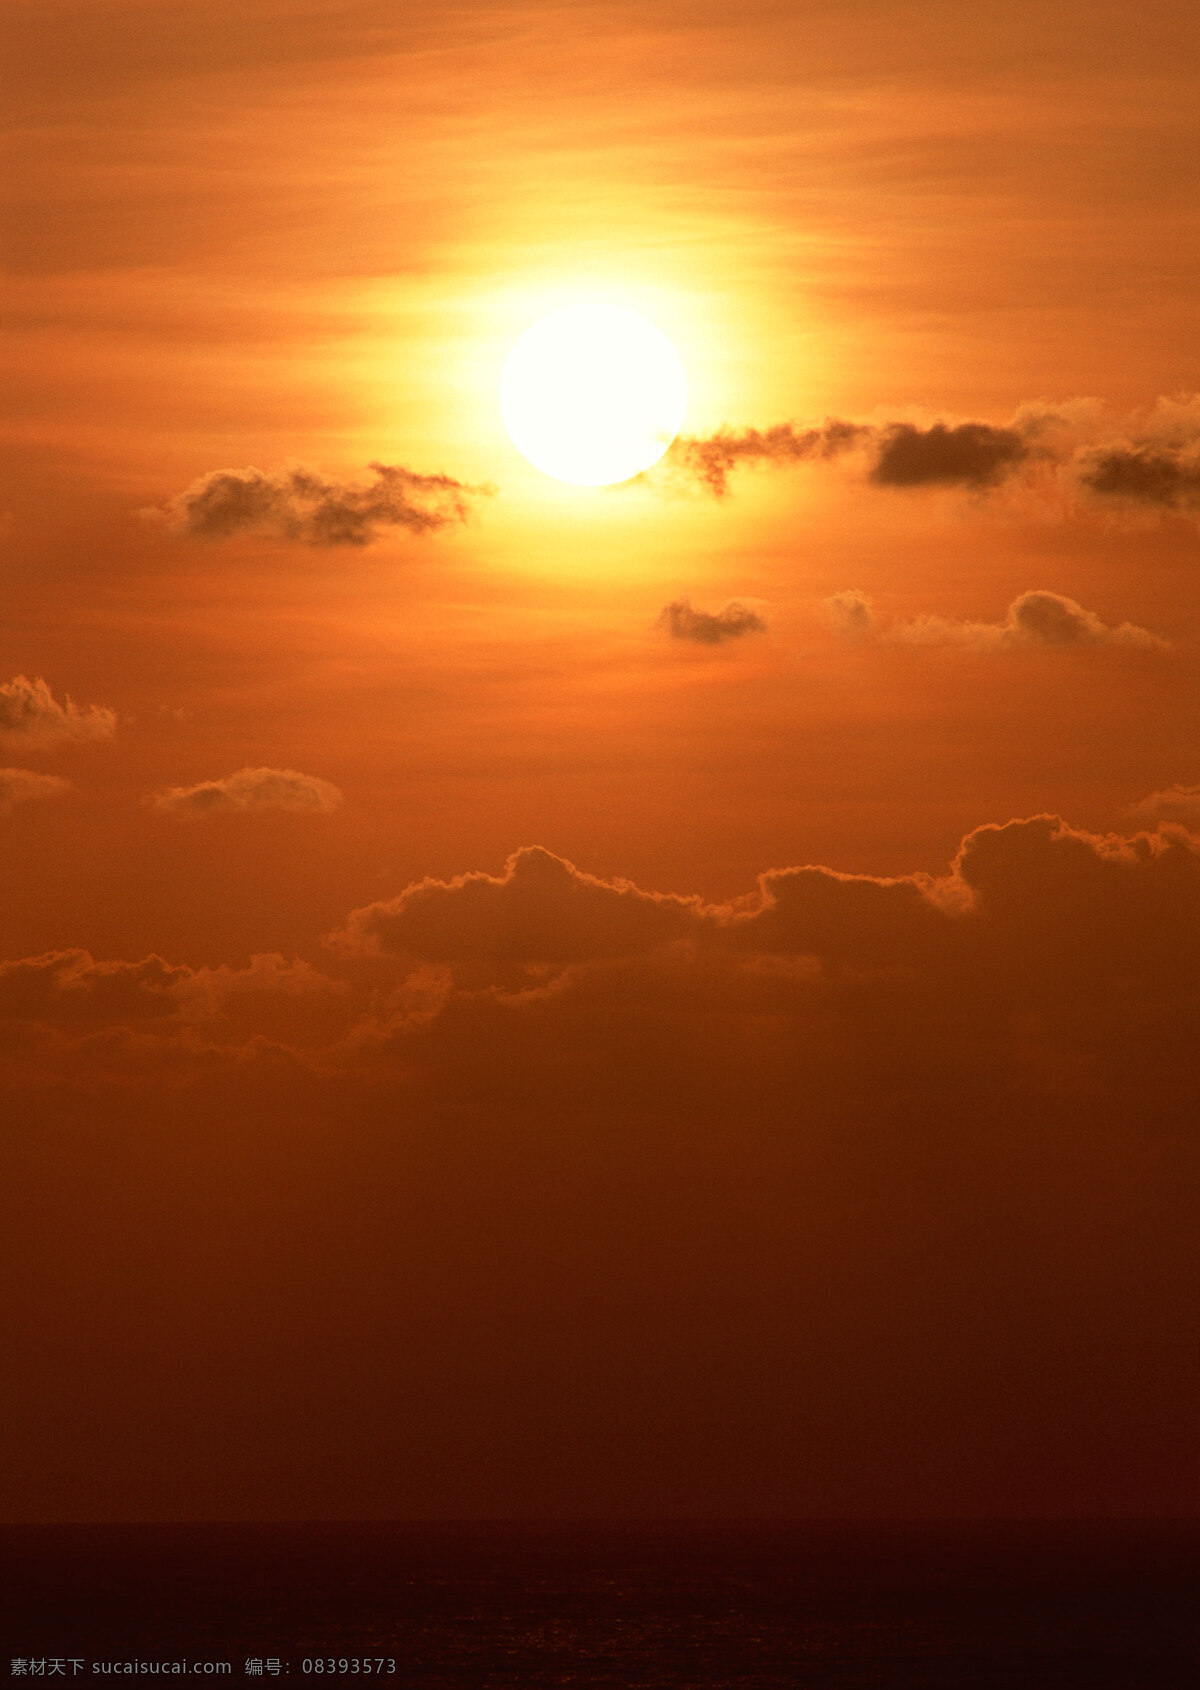 红日当空图片 自然风景 自然风光 自然景观 天空 红日 太阳 船 海水 大海 海面 波光粼粼 清晨 日出 摄影图库